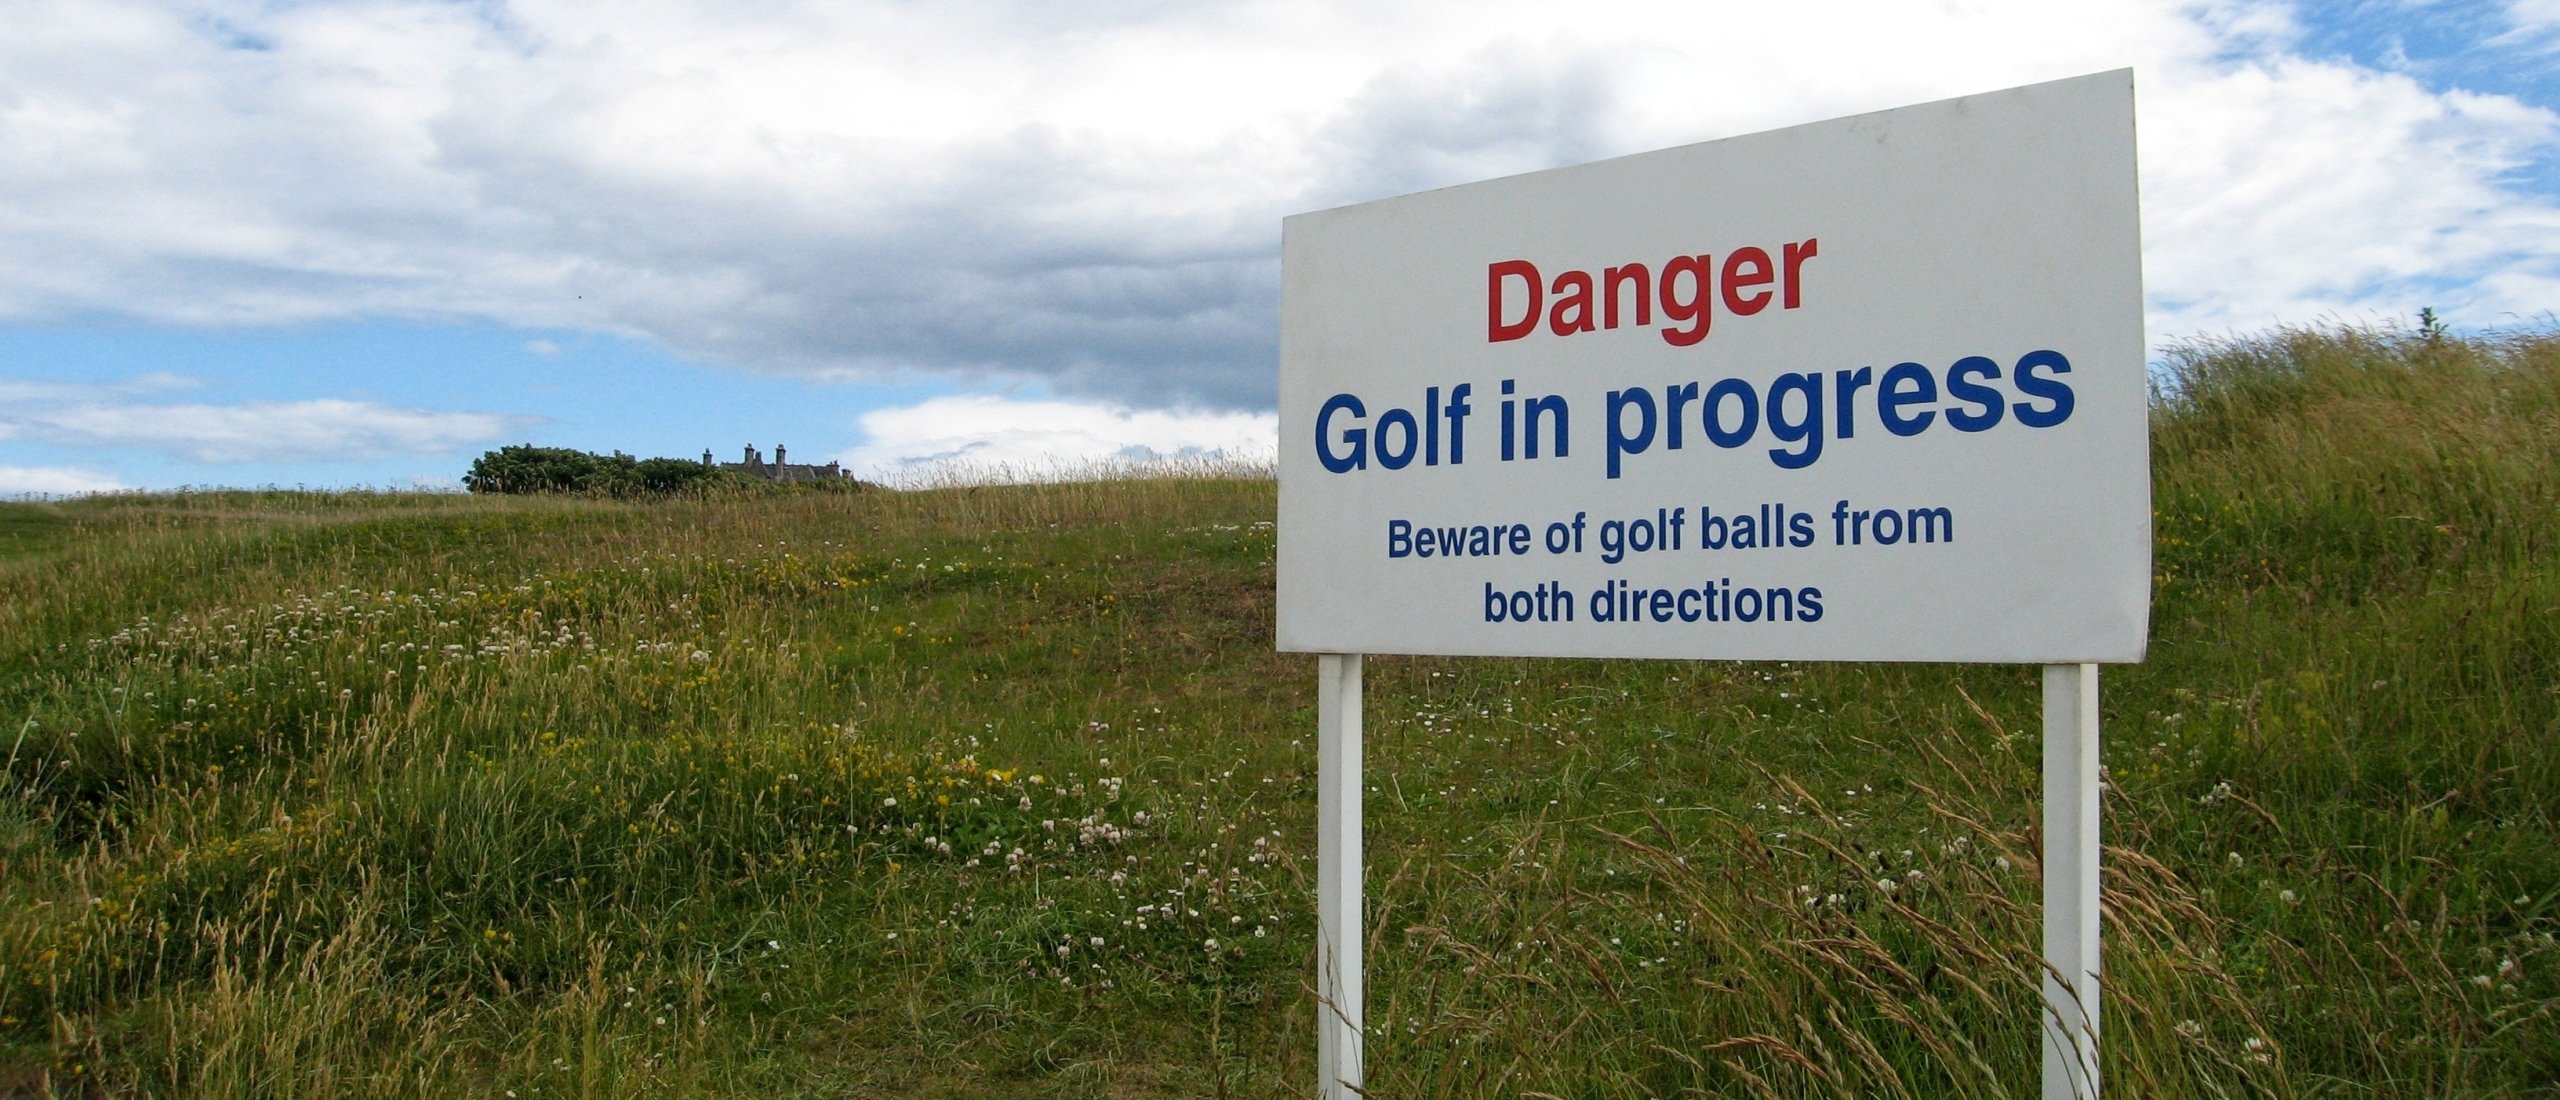 Etiquette voor golfers